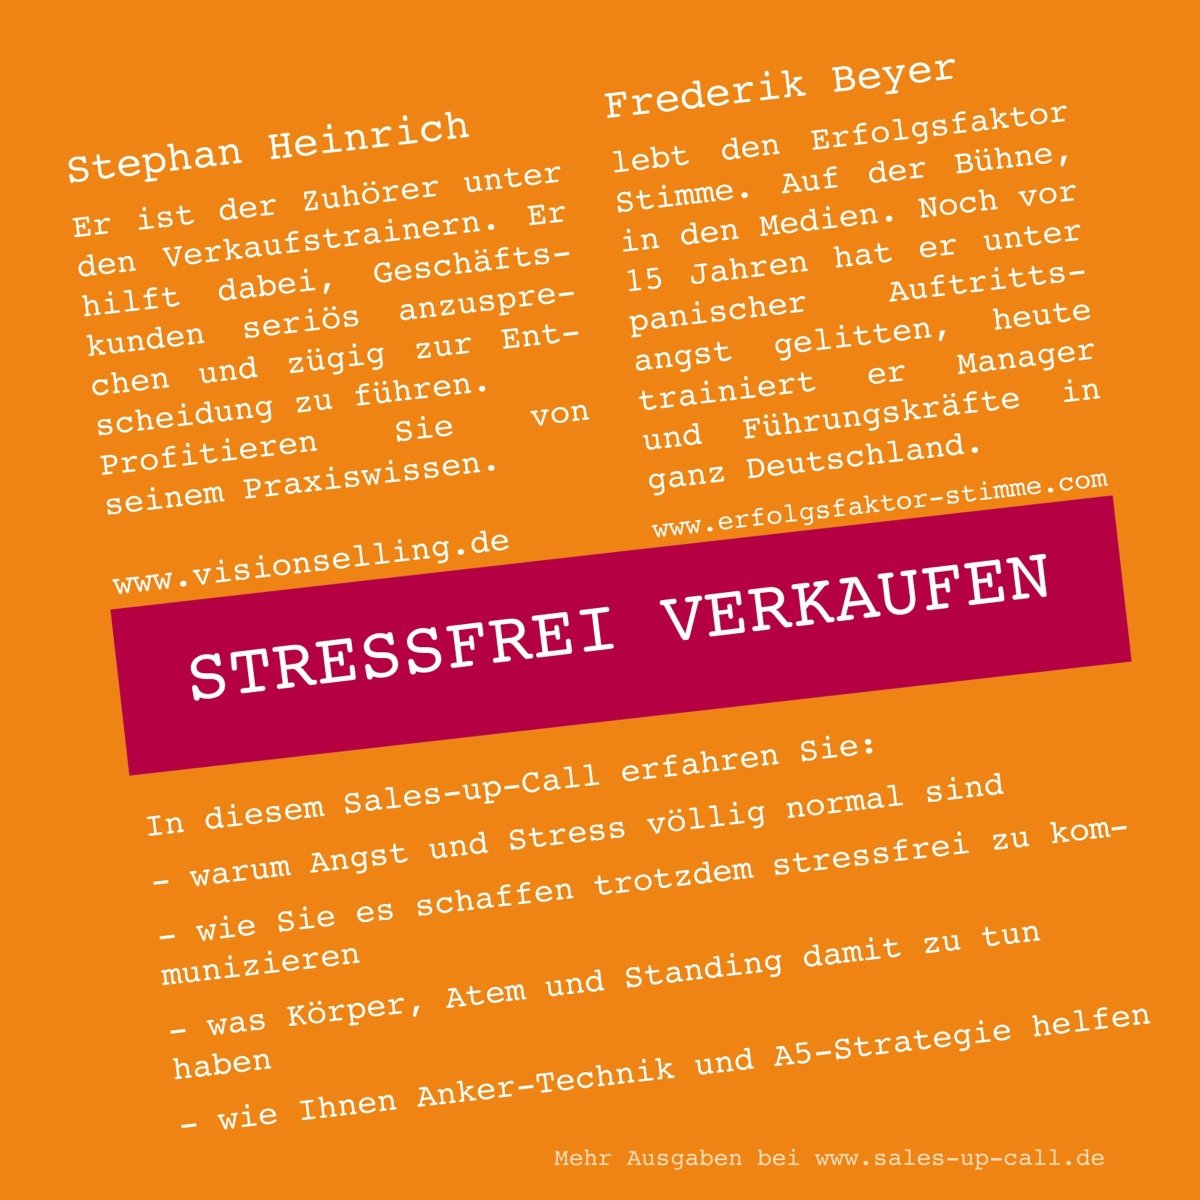 Stressfrei Verkaufen - Sales-up-Call - Stephan Heinrich